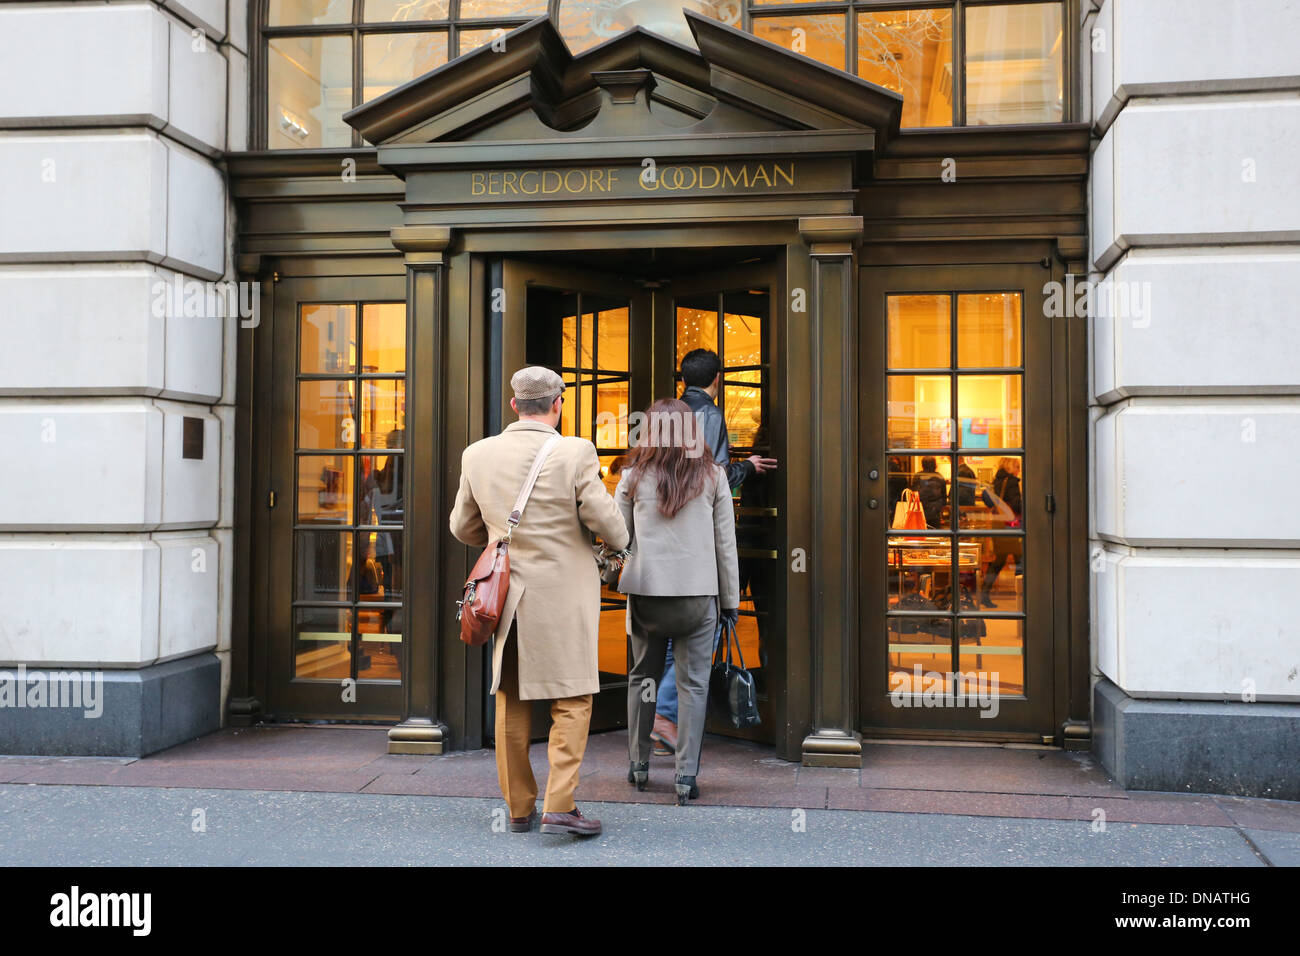 Bergdorf Goodman, 754 Fifth Avenue, New York, NY. persone di entrare in un grande magazzino. Foto Stock